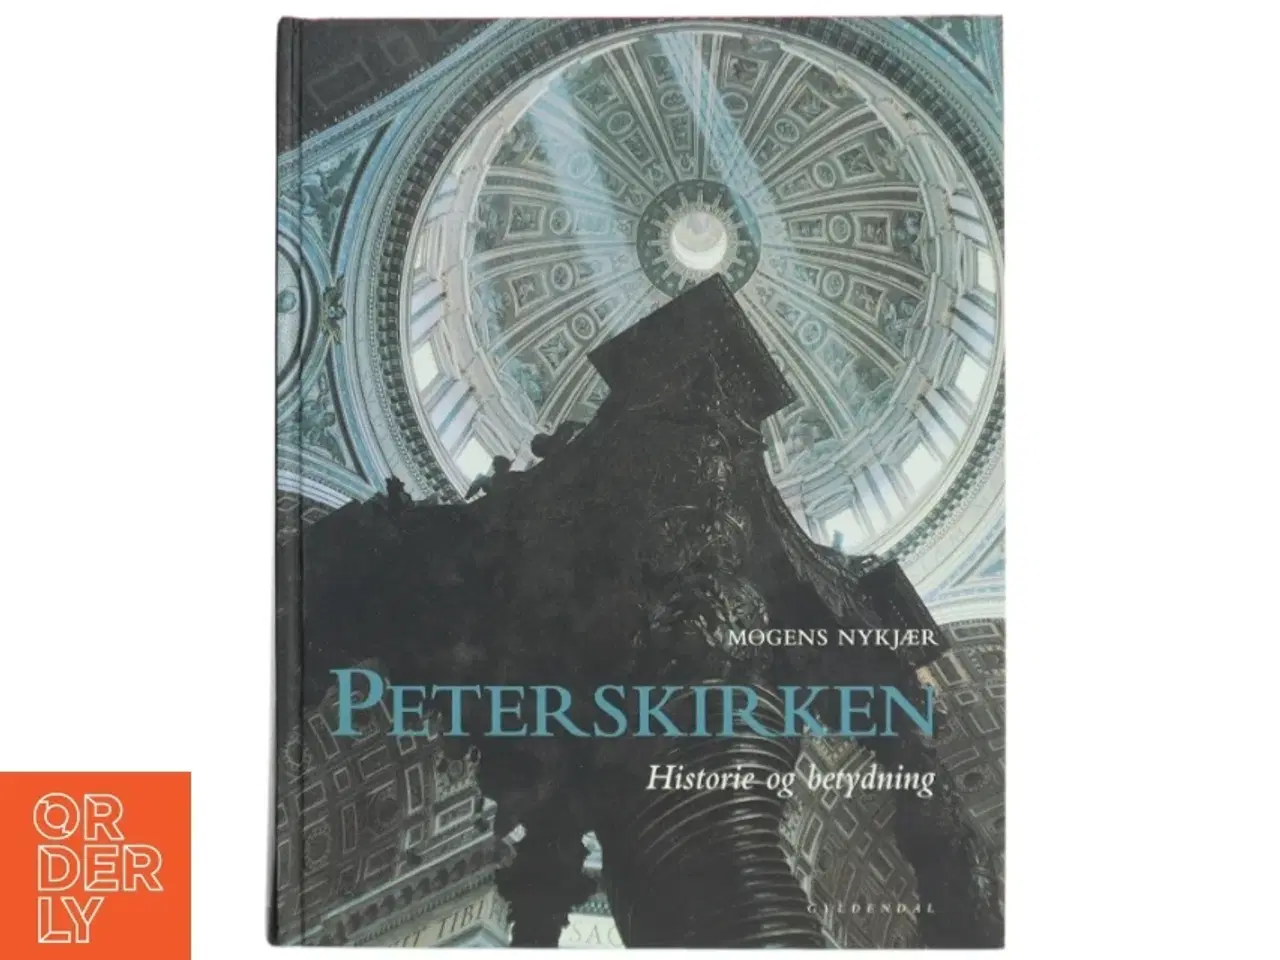 Billede 1 - 'Peterskirken: historie og betydning' af Mogens Nykjær (bog)